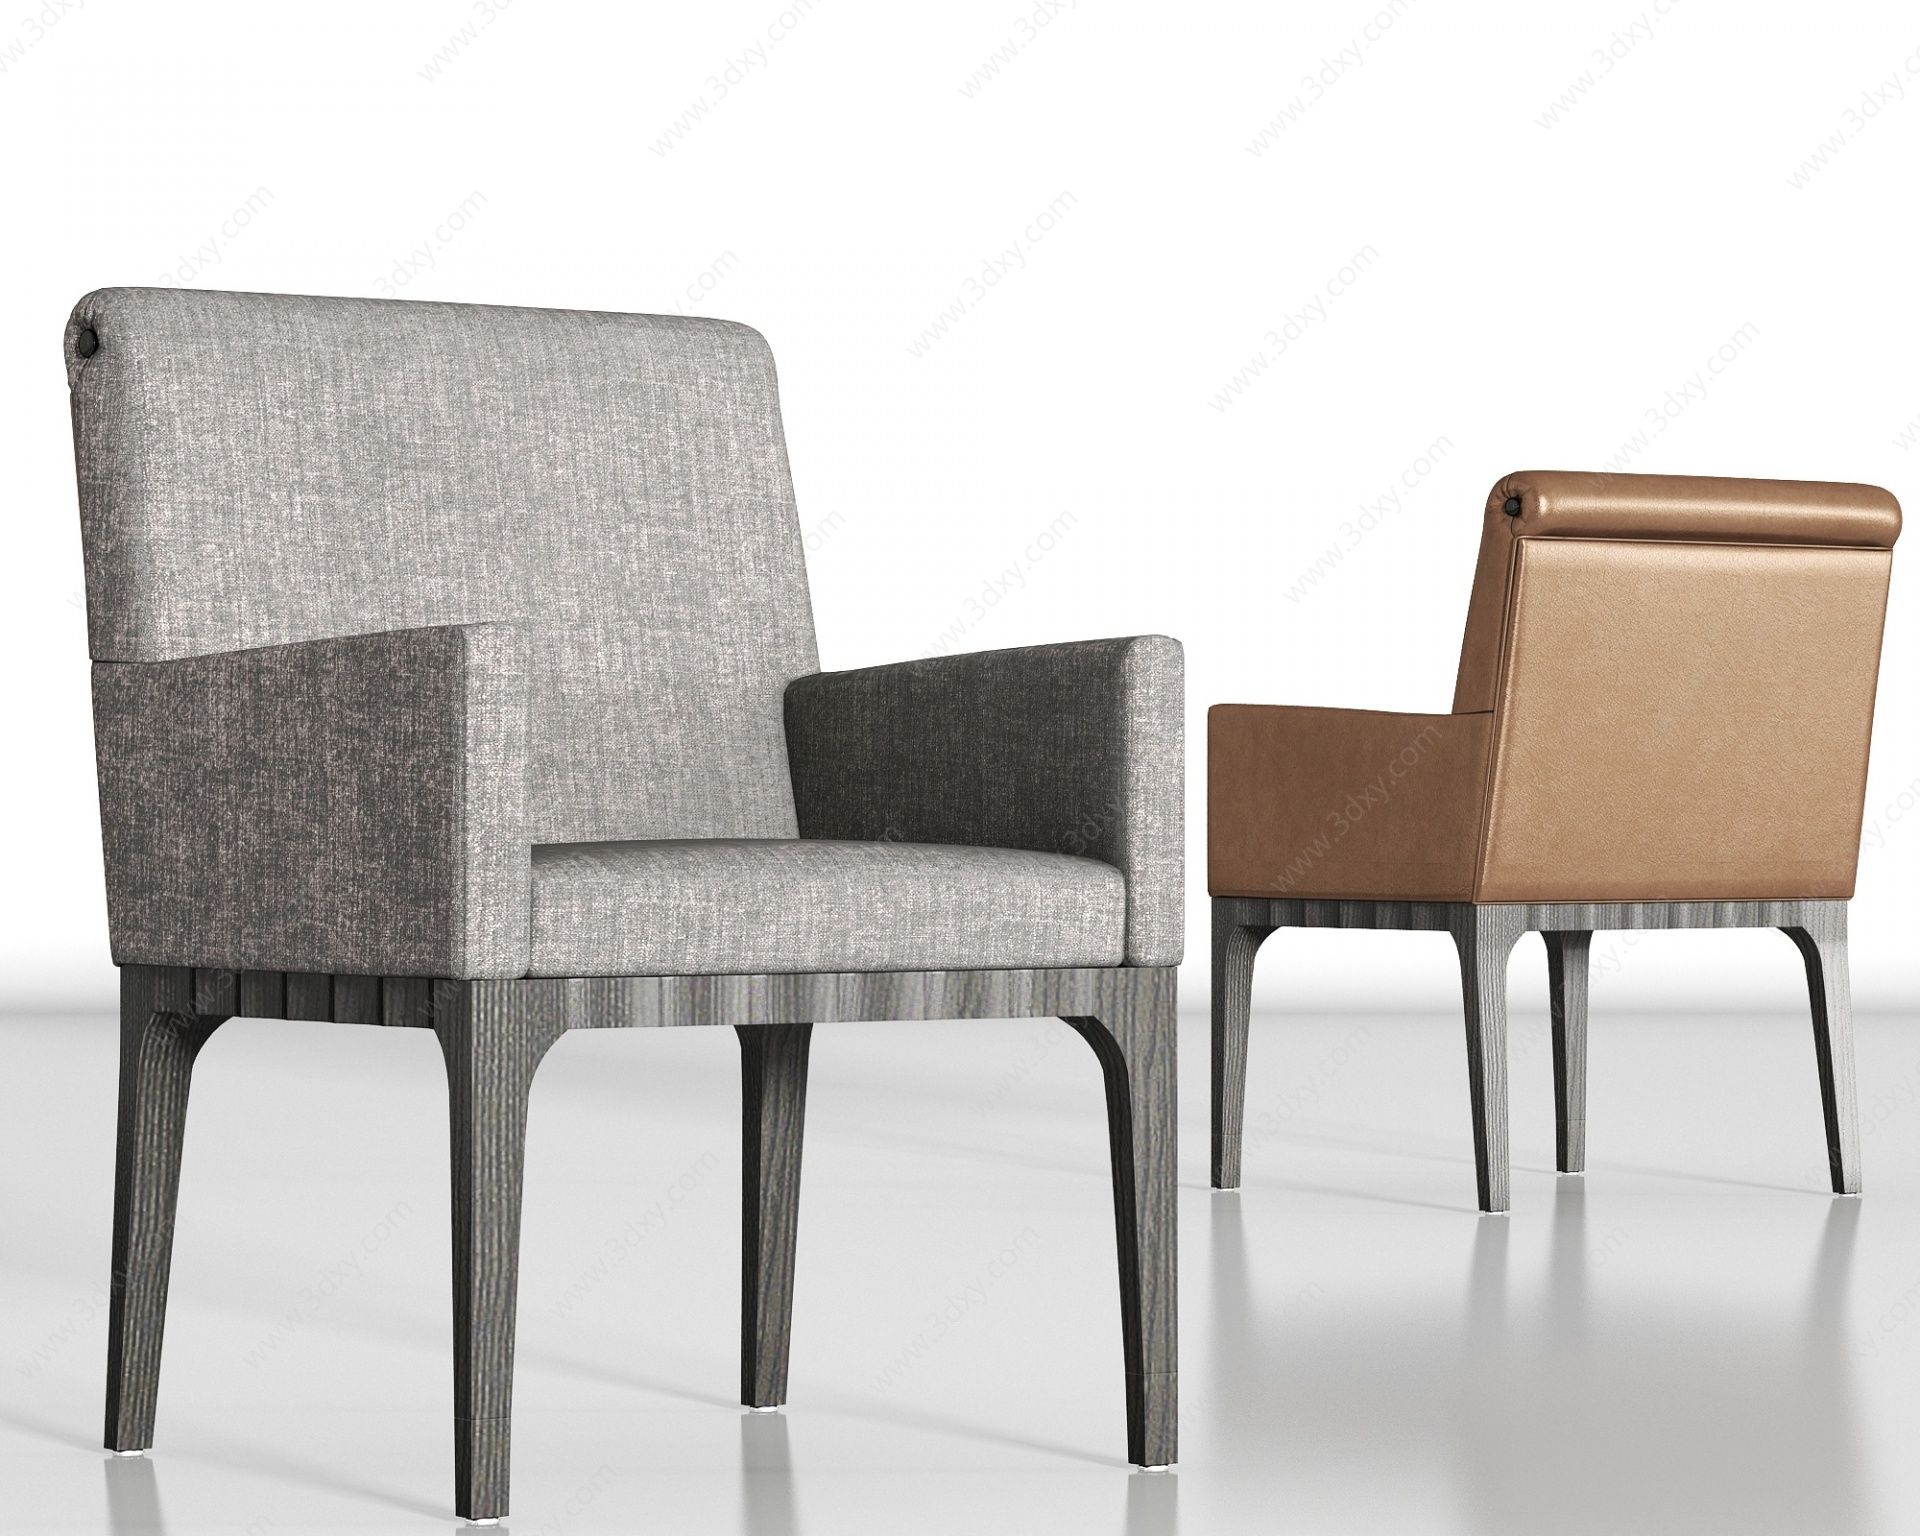 新中式布艺皮革单椅组合3D模型